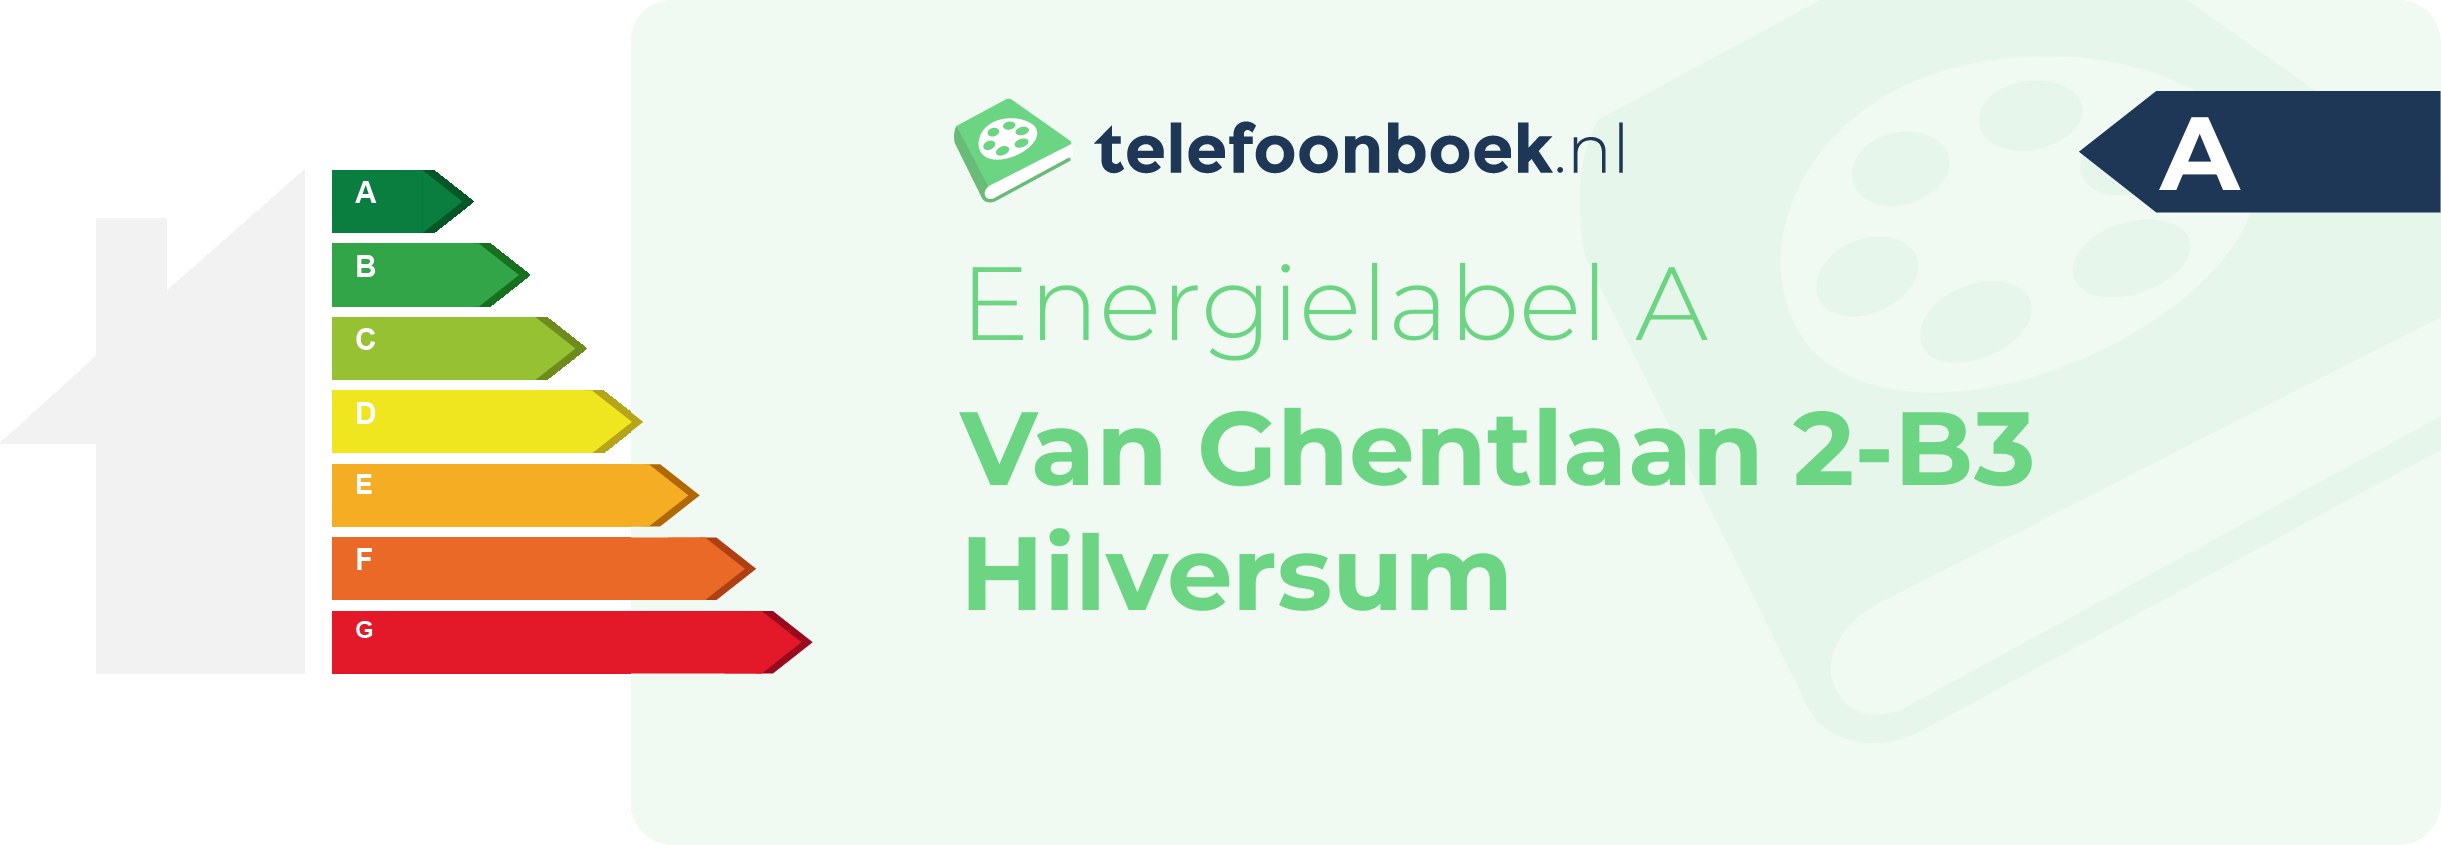 Energielabel Van Ghentlaan 2-B3 Hilversum